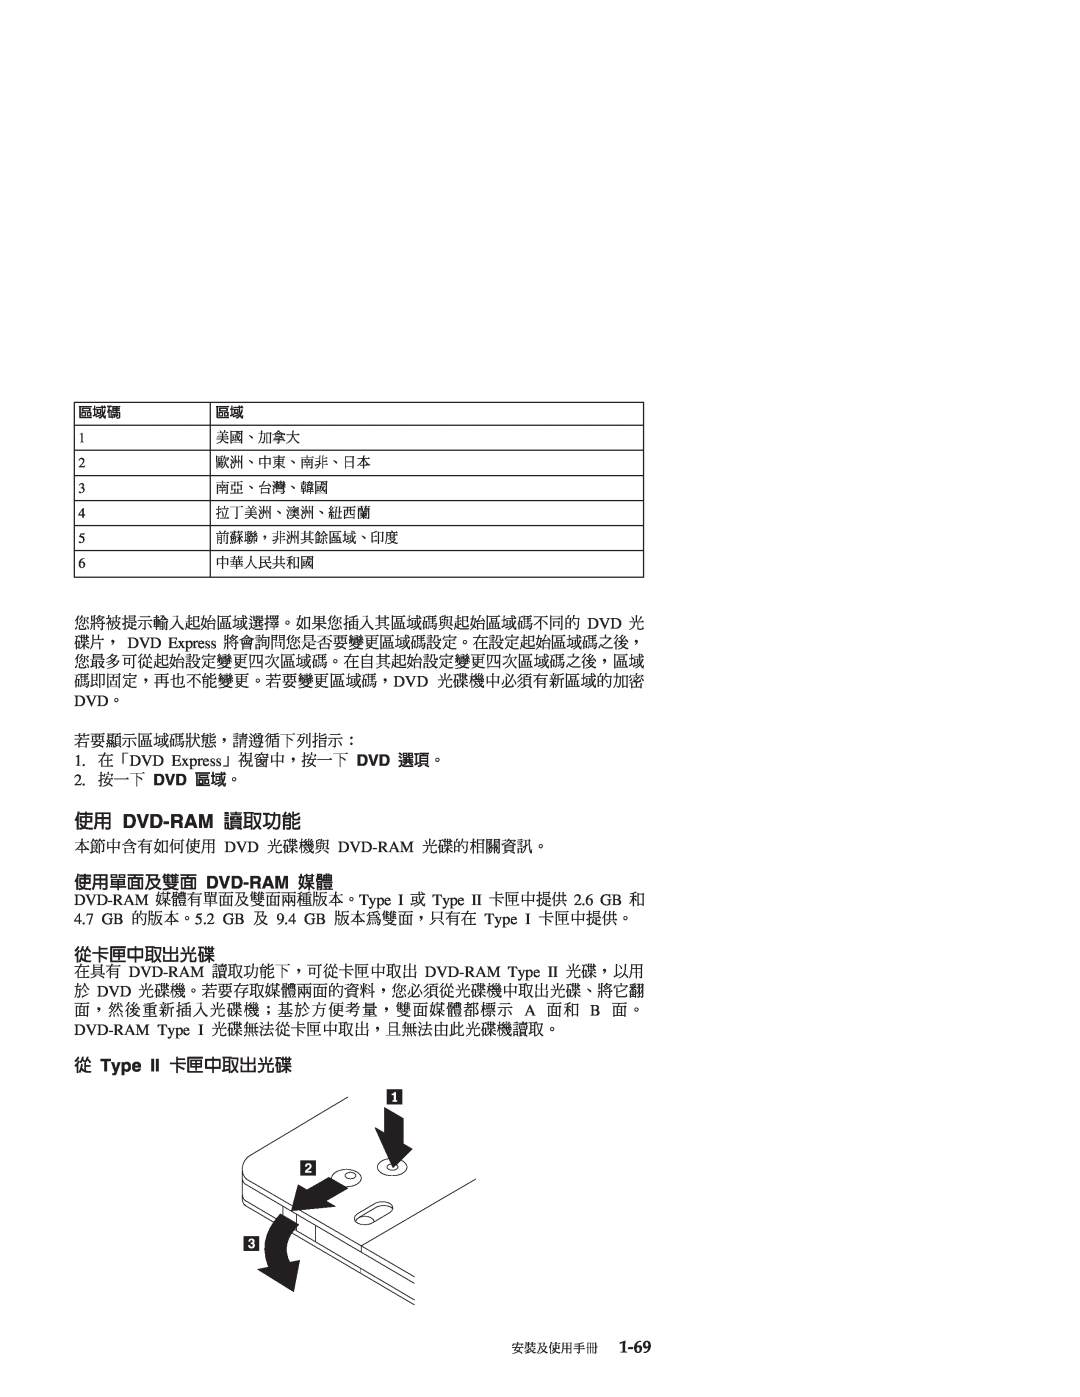 IBM 71P7285 manual DVD-RAM ¬ \α, Dvd-Ram Cθ, qdXñ, q Type II dXñ 